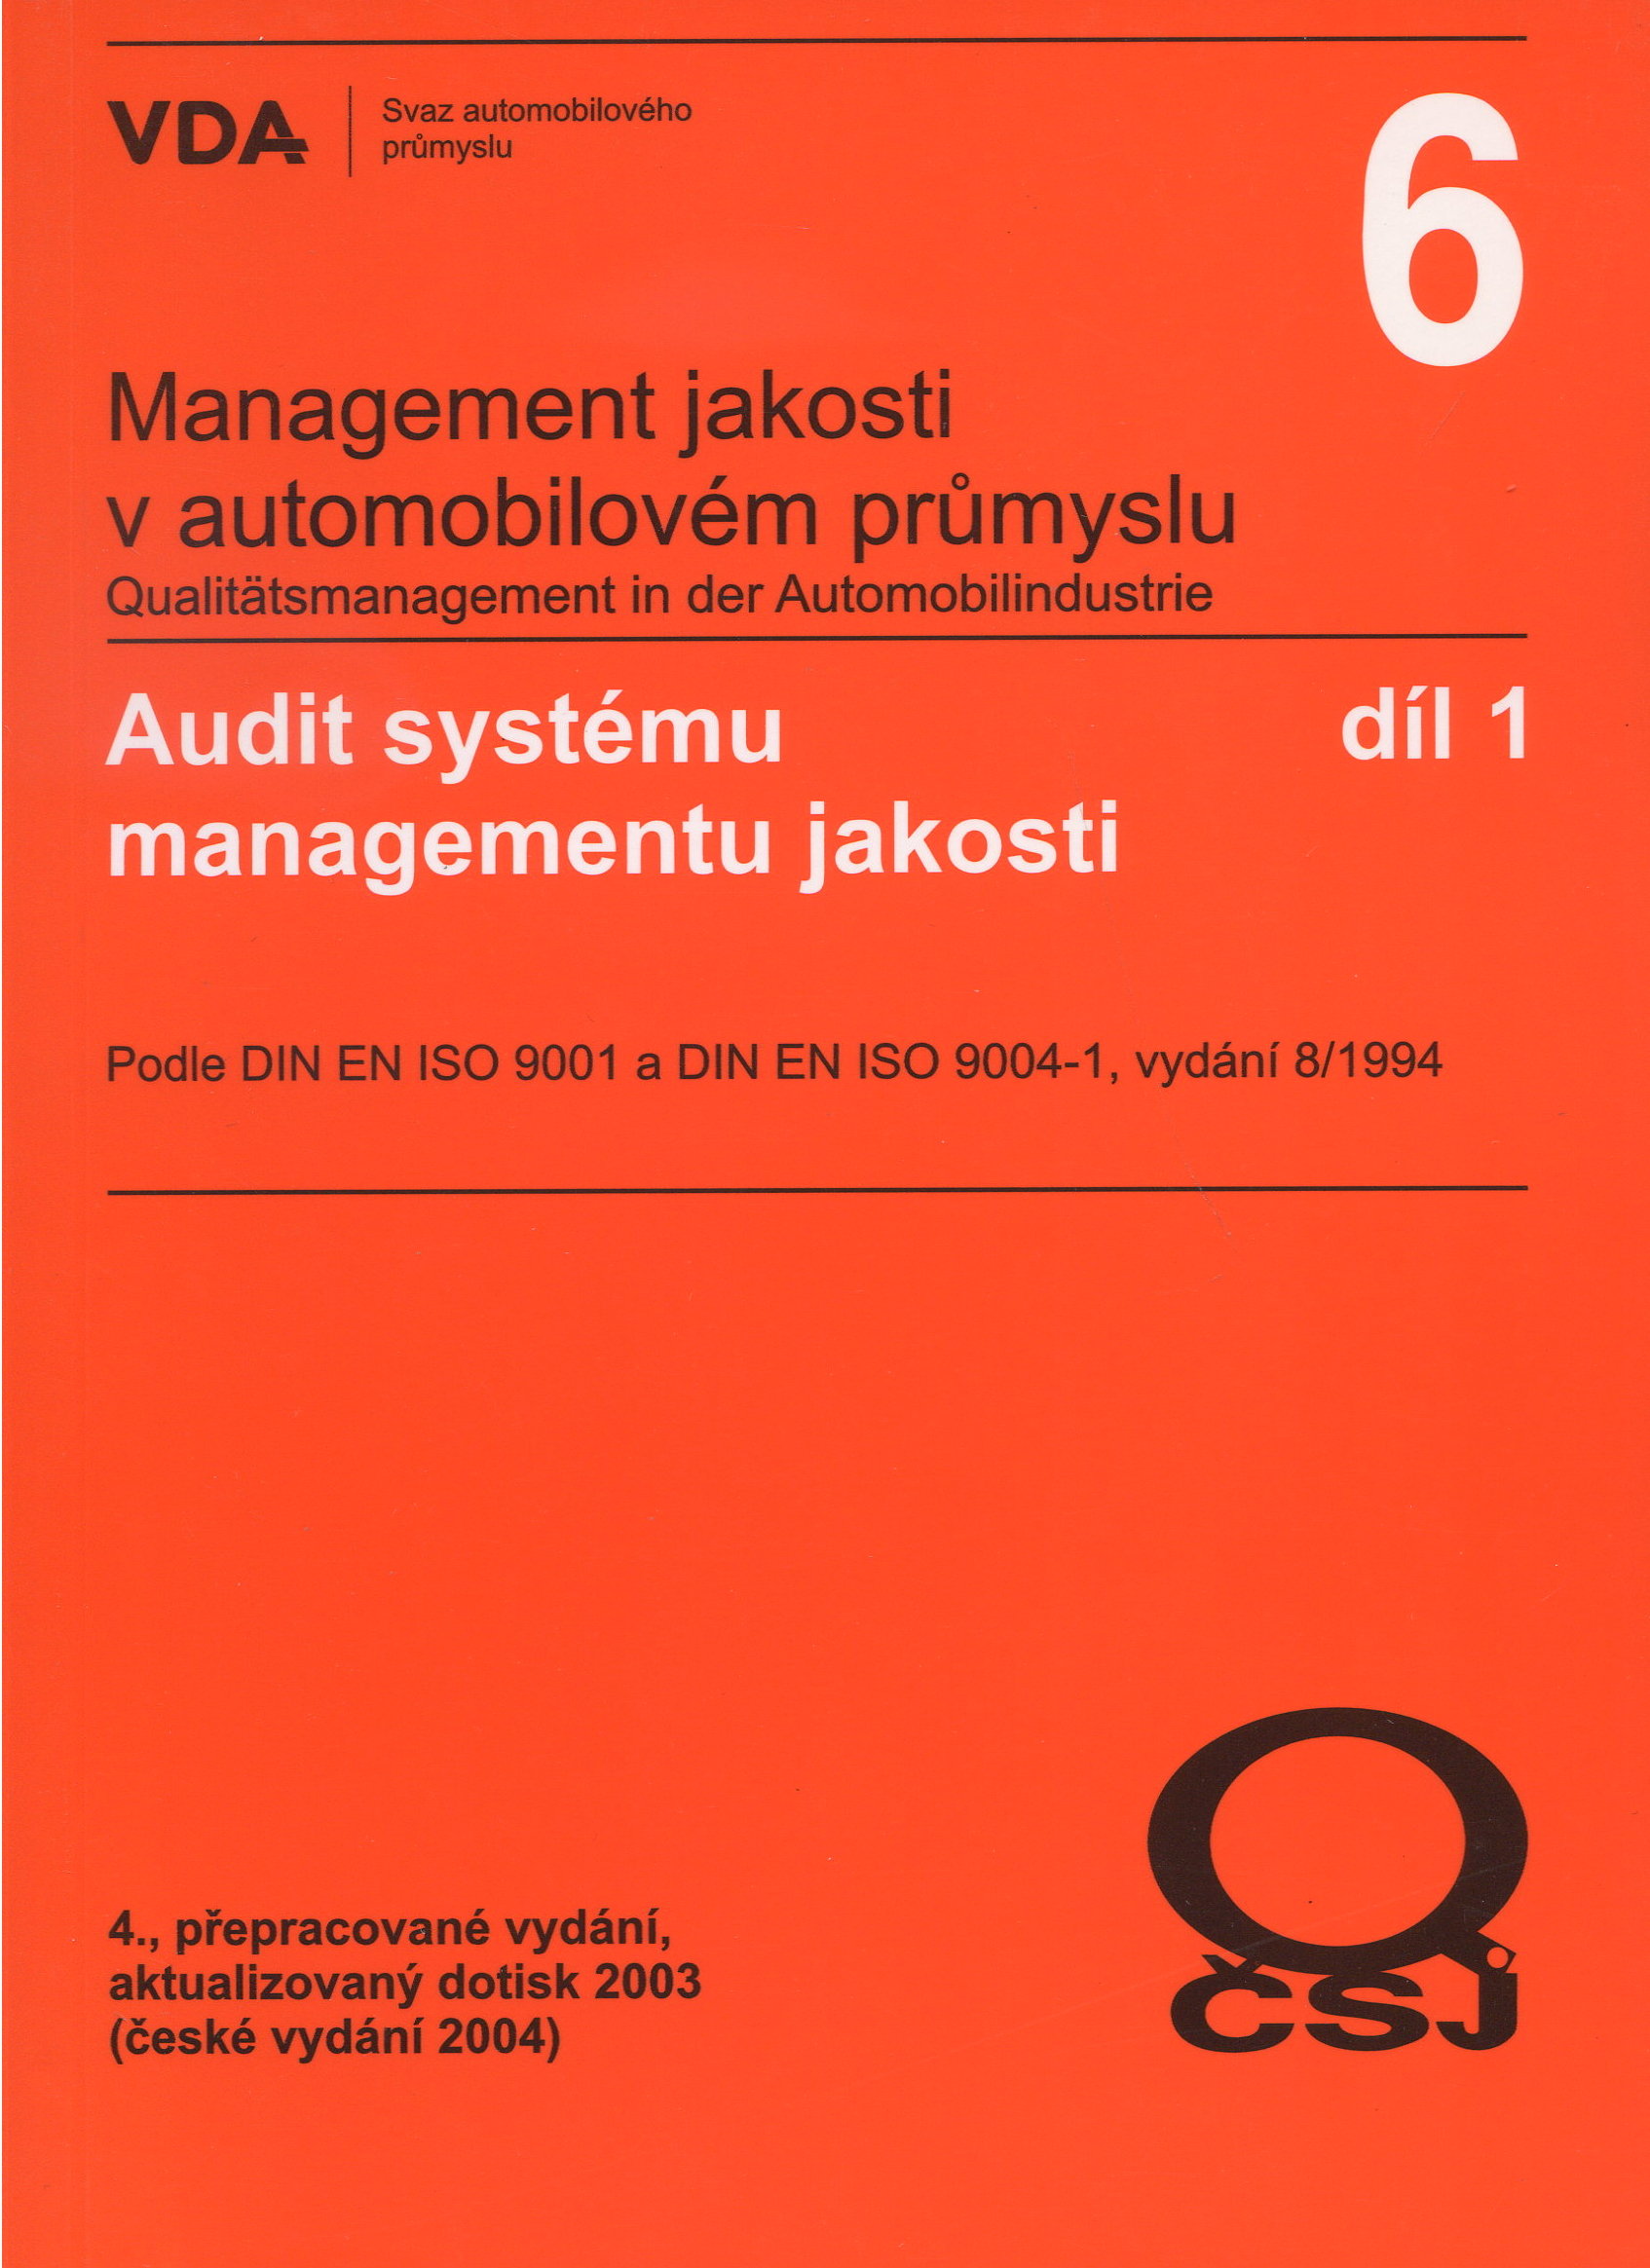 Management jakosti v automobilovém průmyslu VDA 6.1